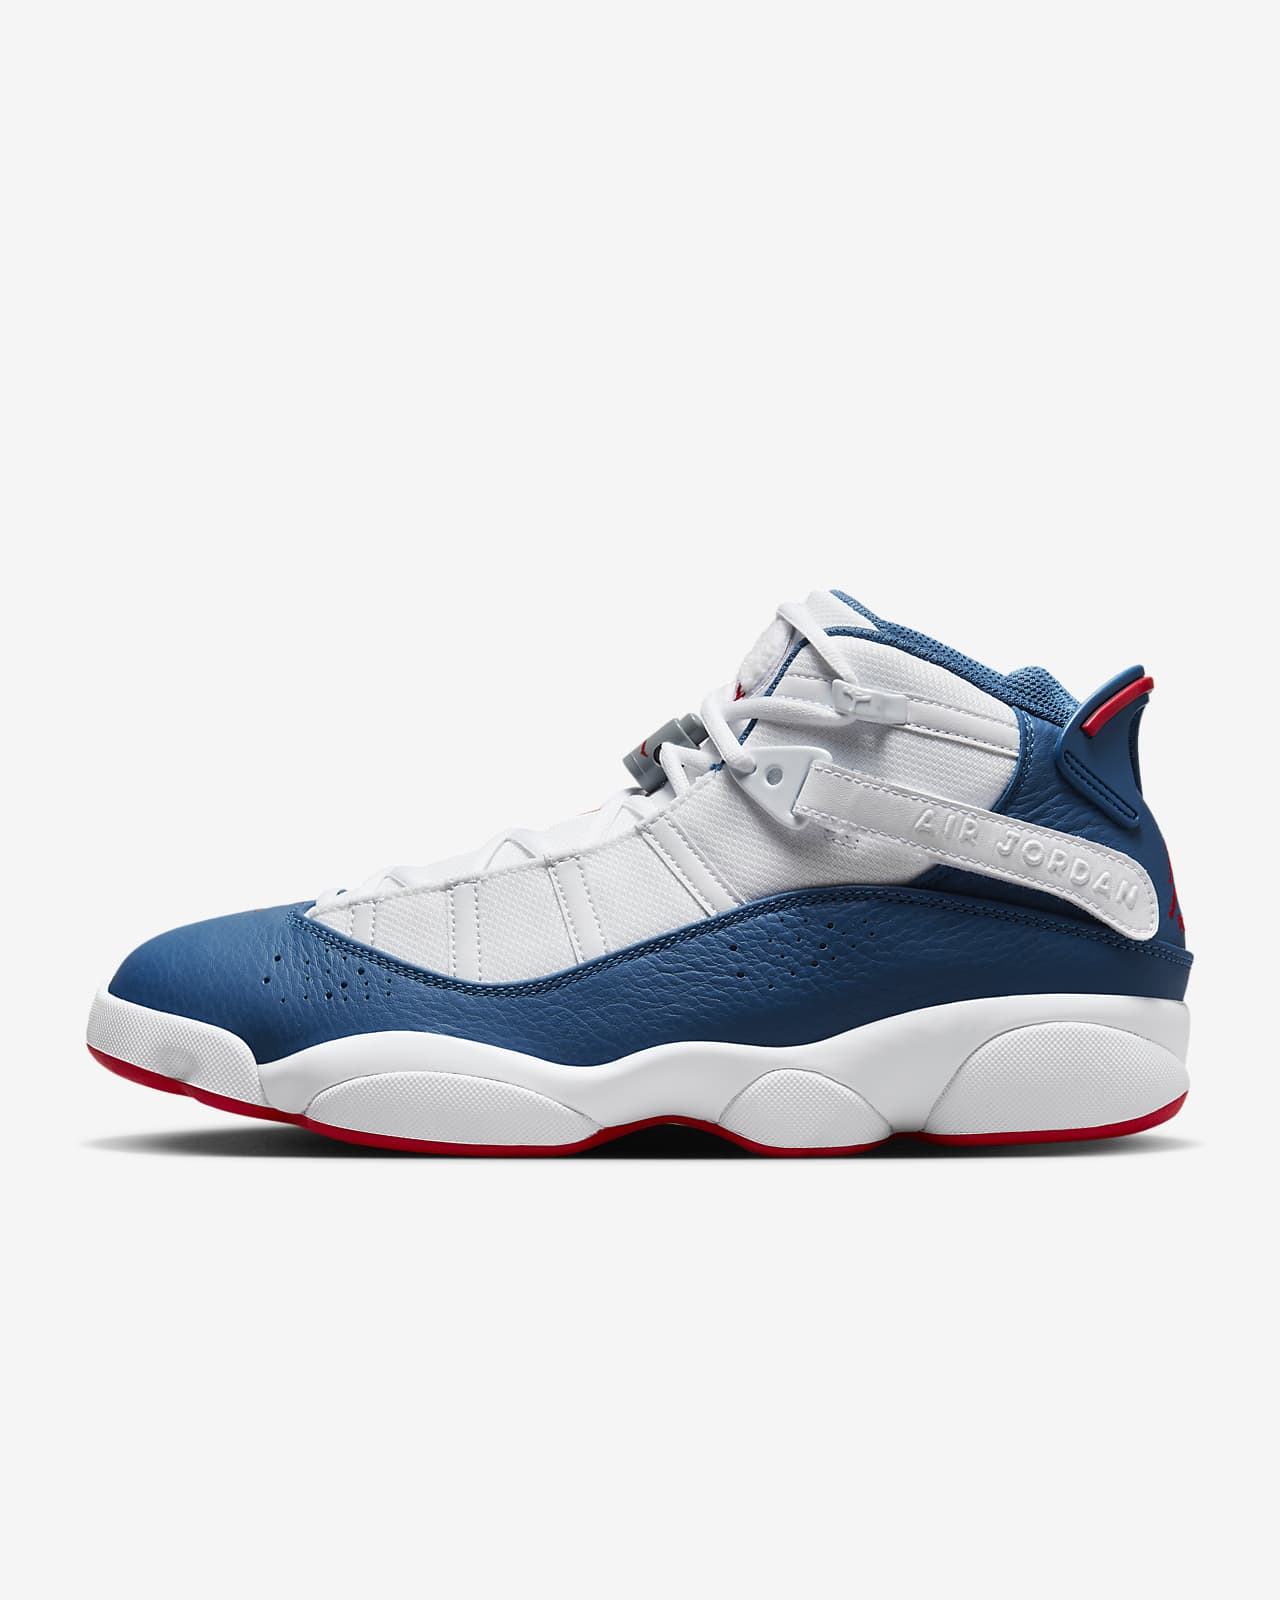 Jordan 6 Rings Men's Shoes. Nike RO